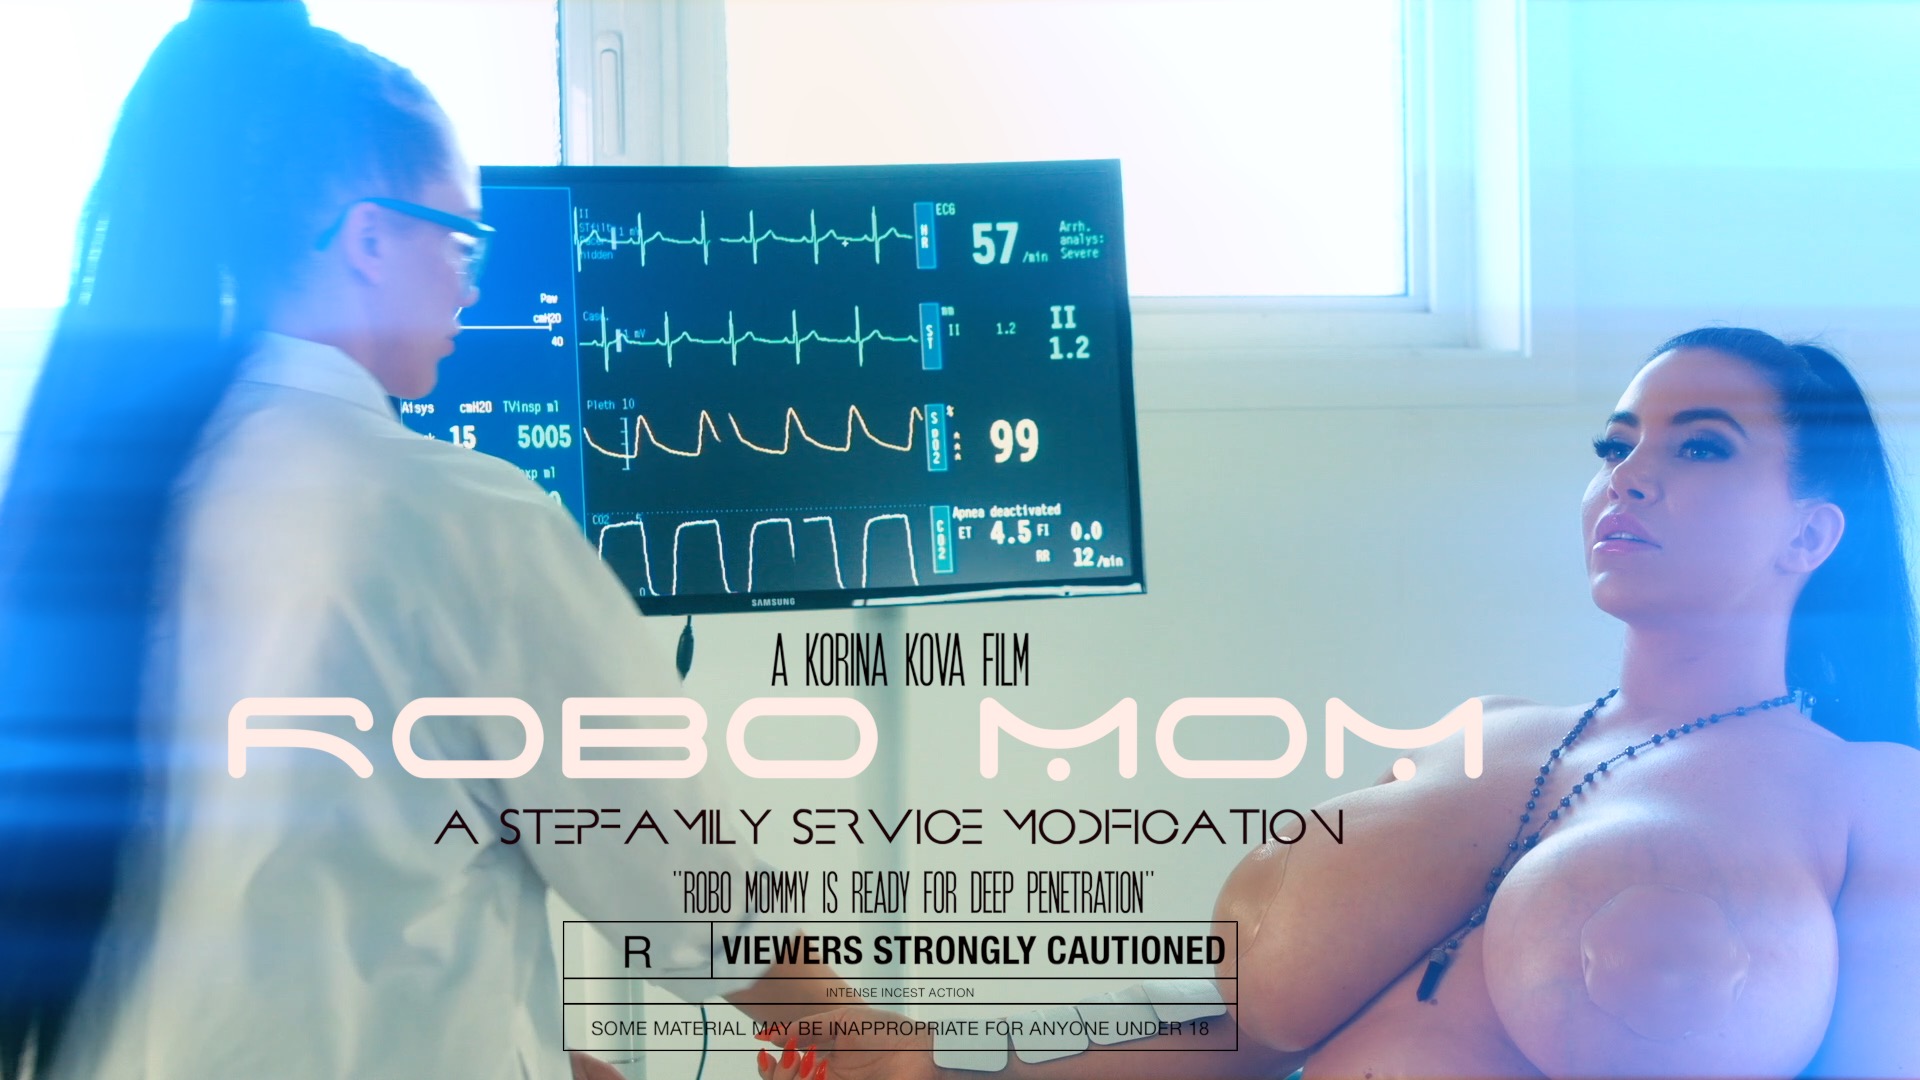 Robo Mom: Family Services Modification's 4 | Korina Kova